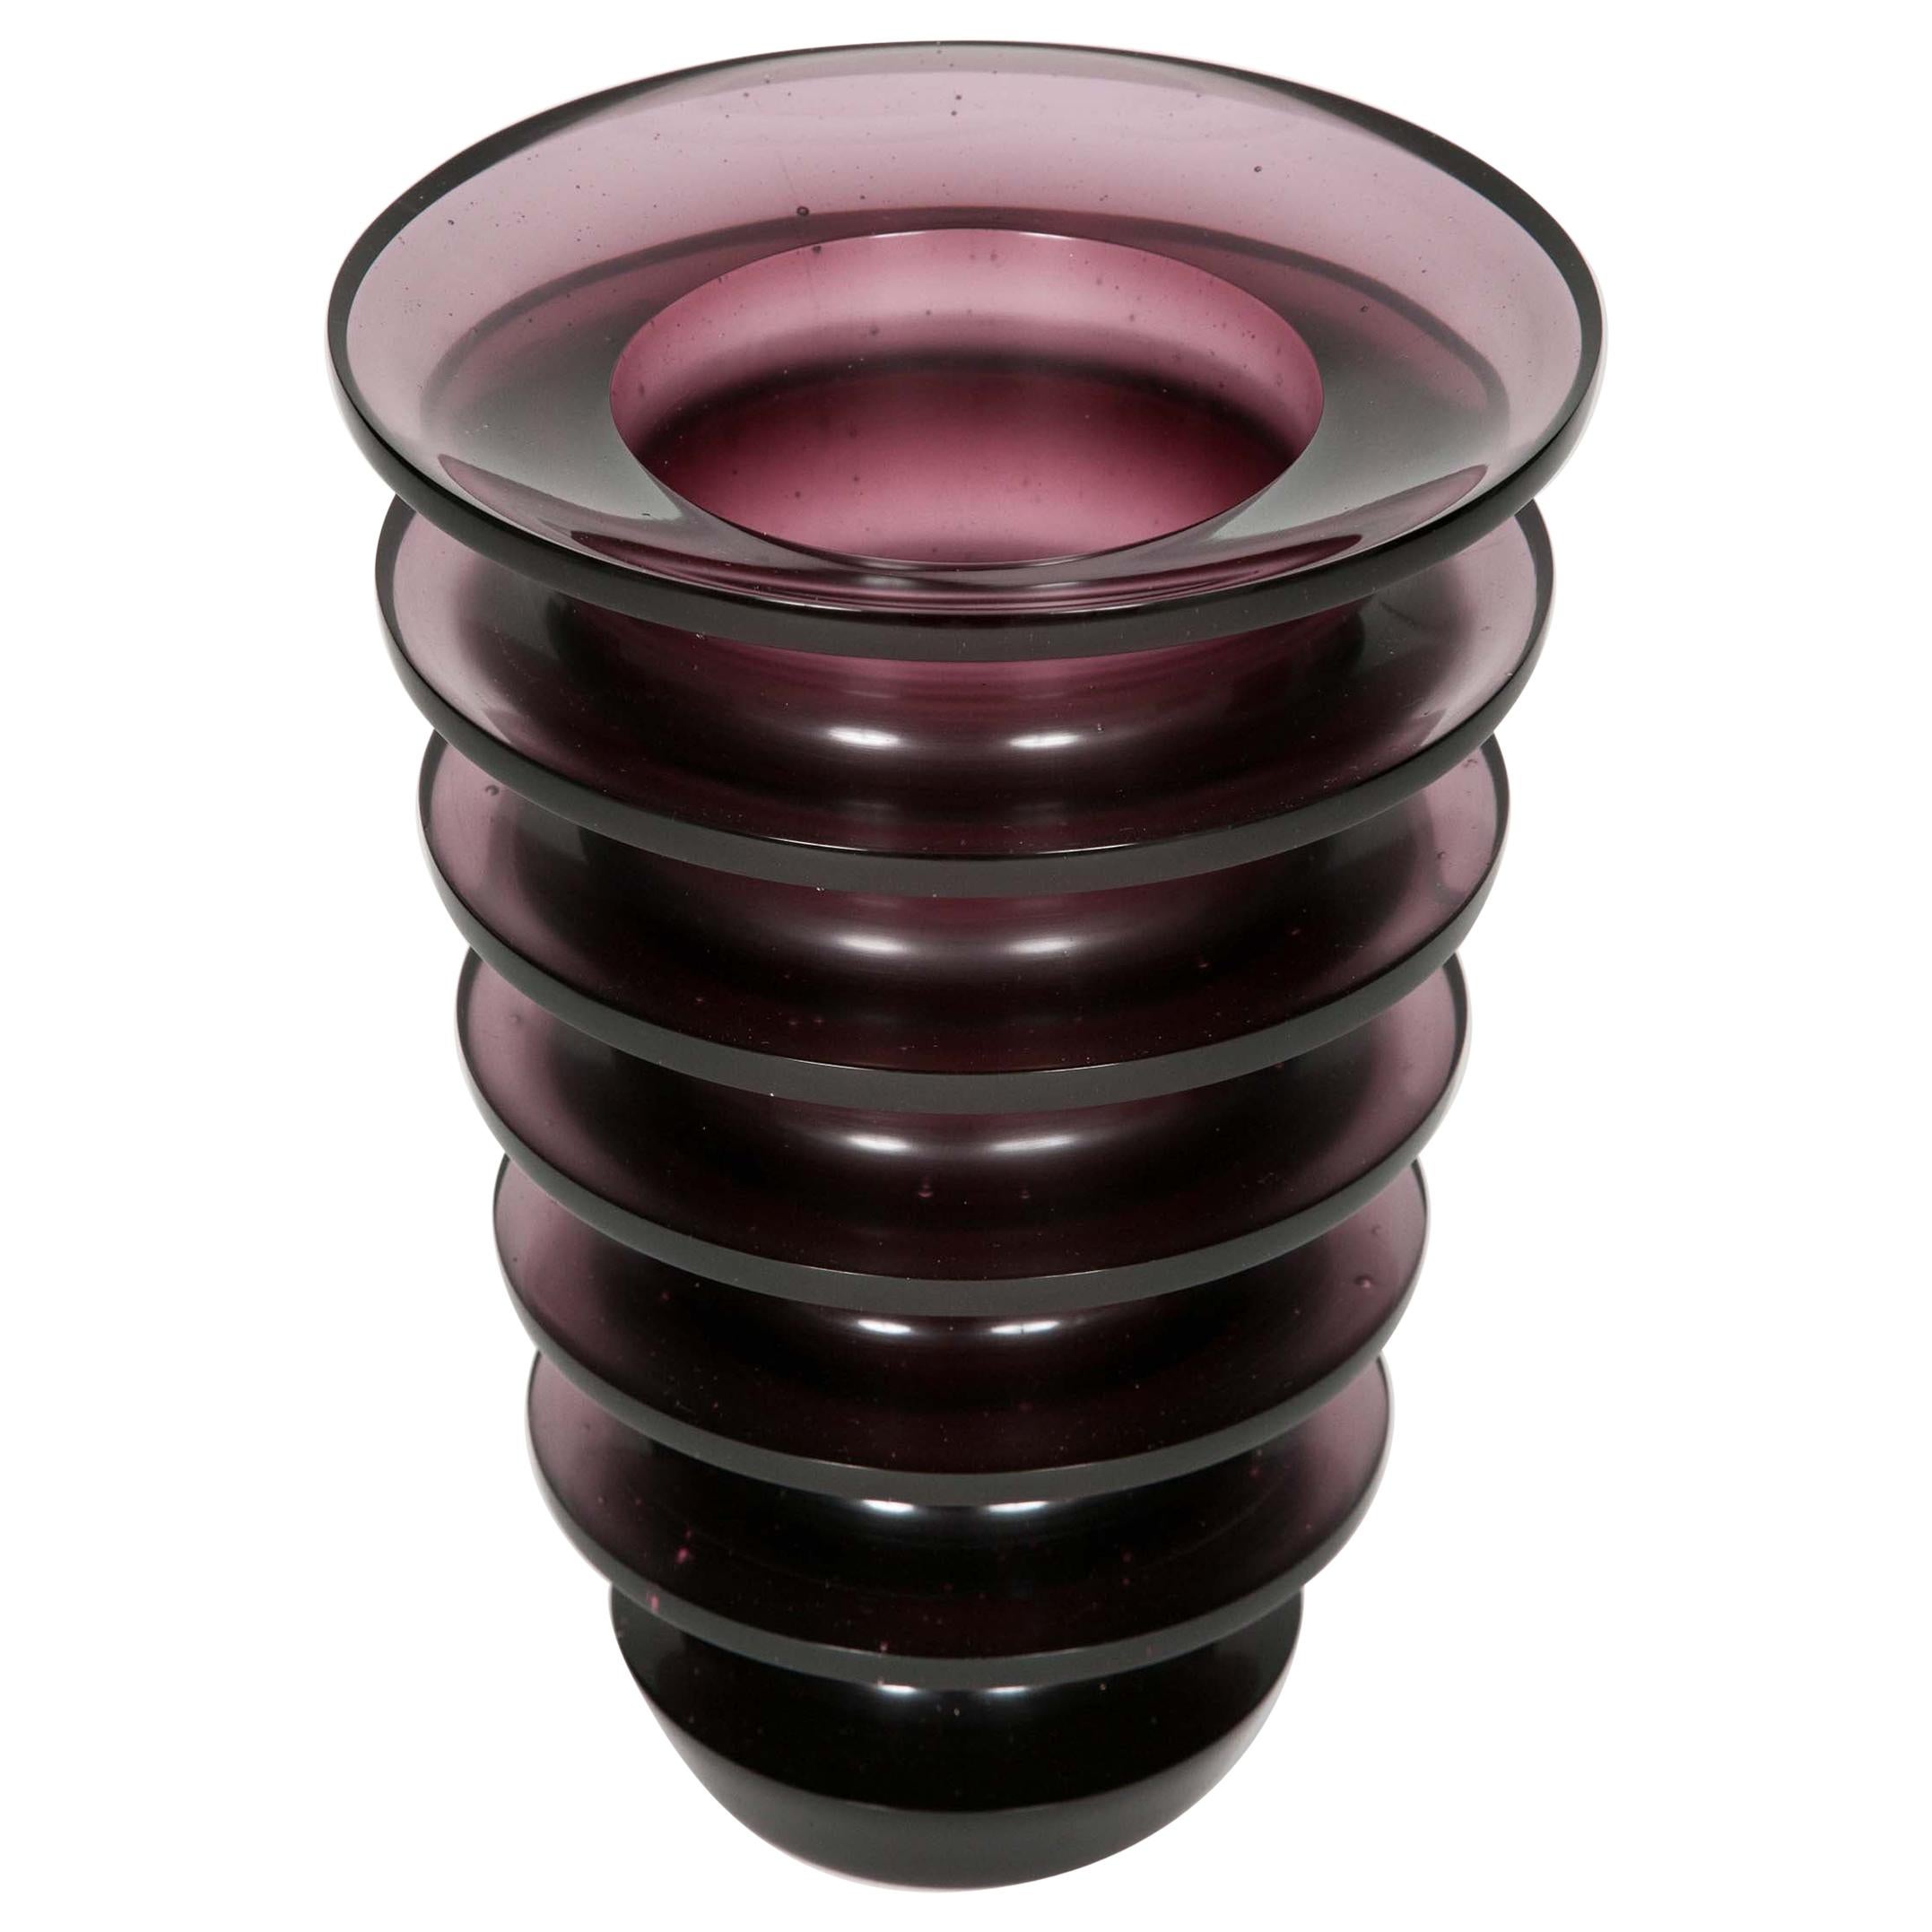 Leila, a unique dark purple / blackberry coloured glass vase by Paul Stopler